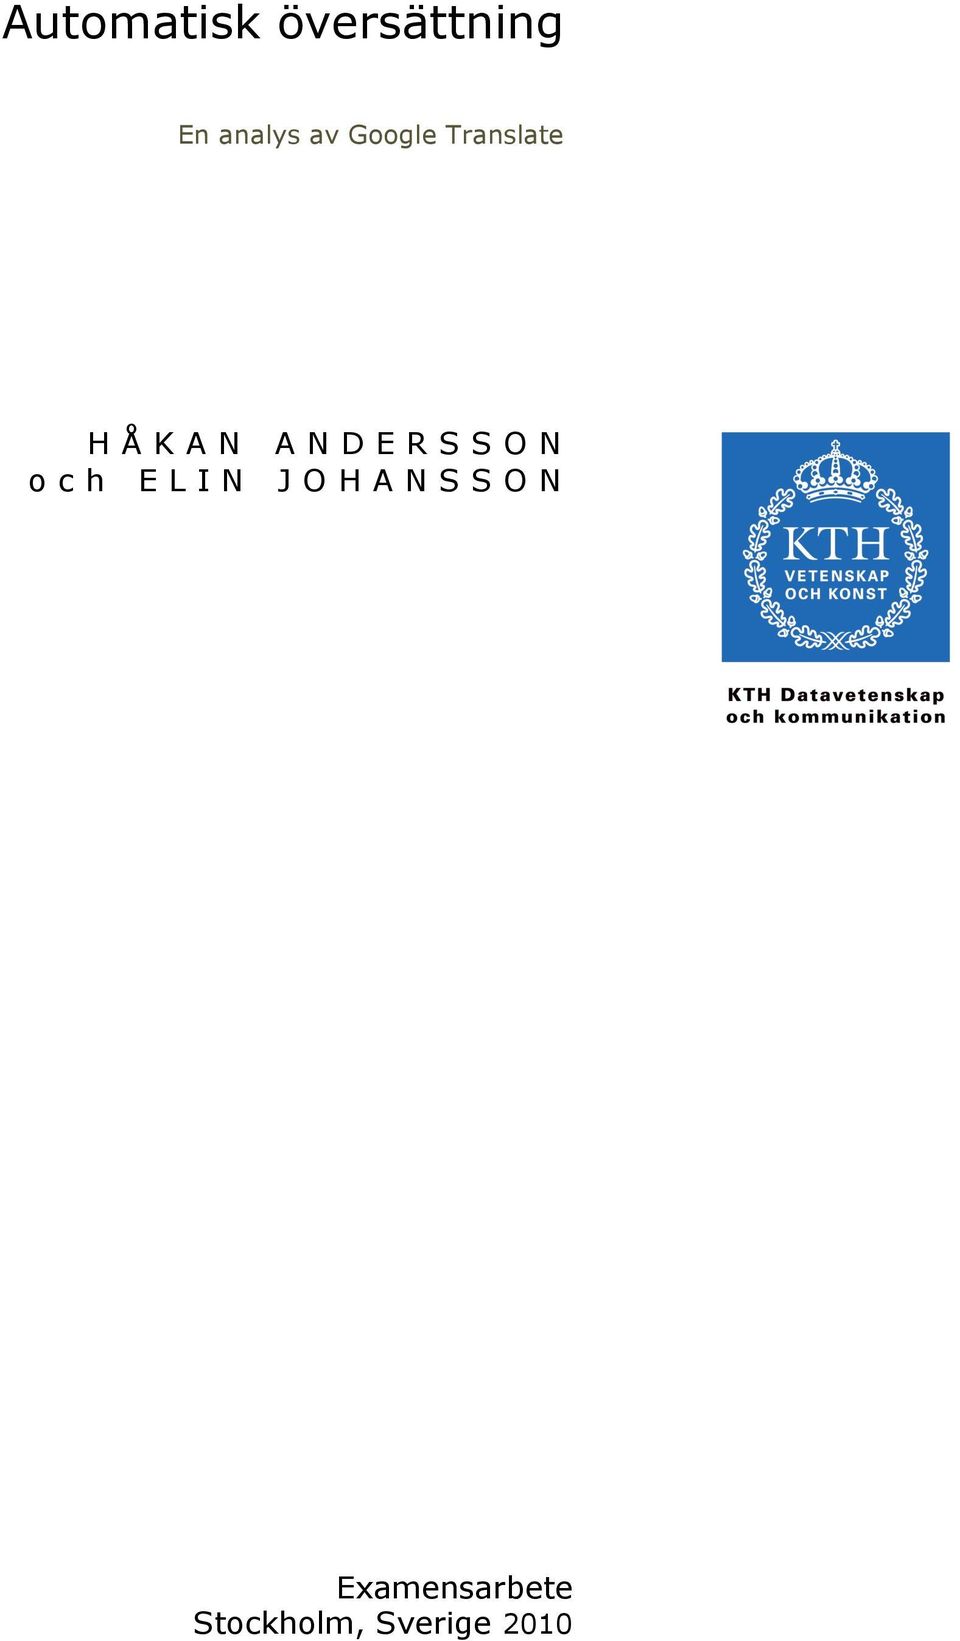 HÅKAN ANDERSSON och ELIN